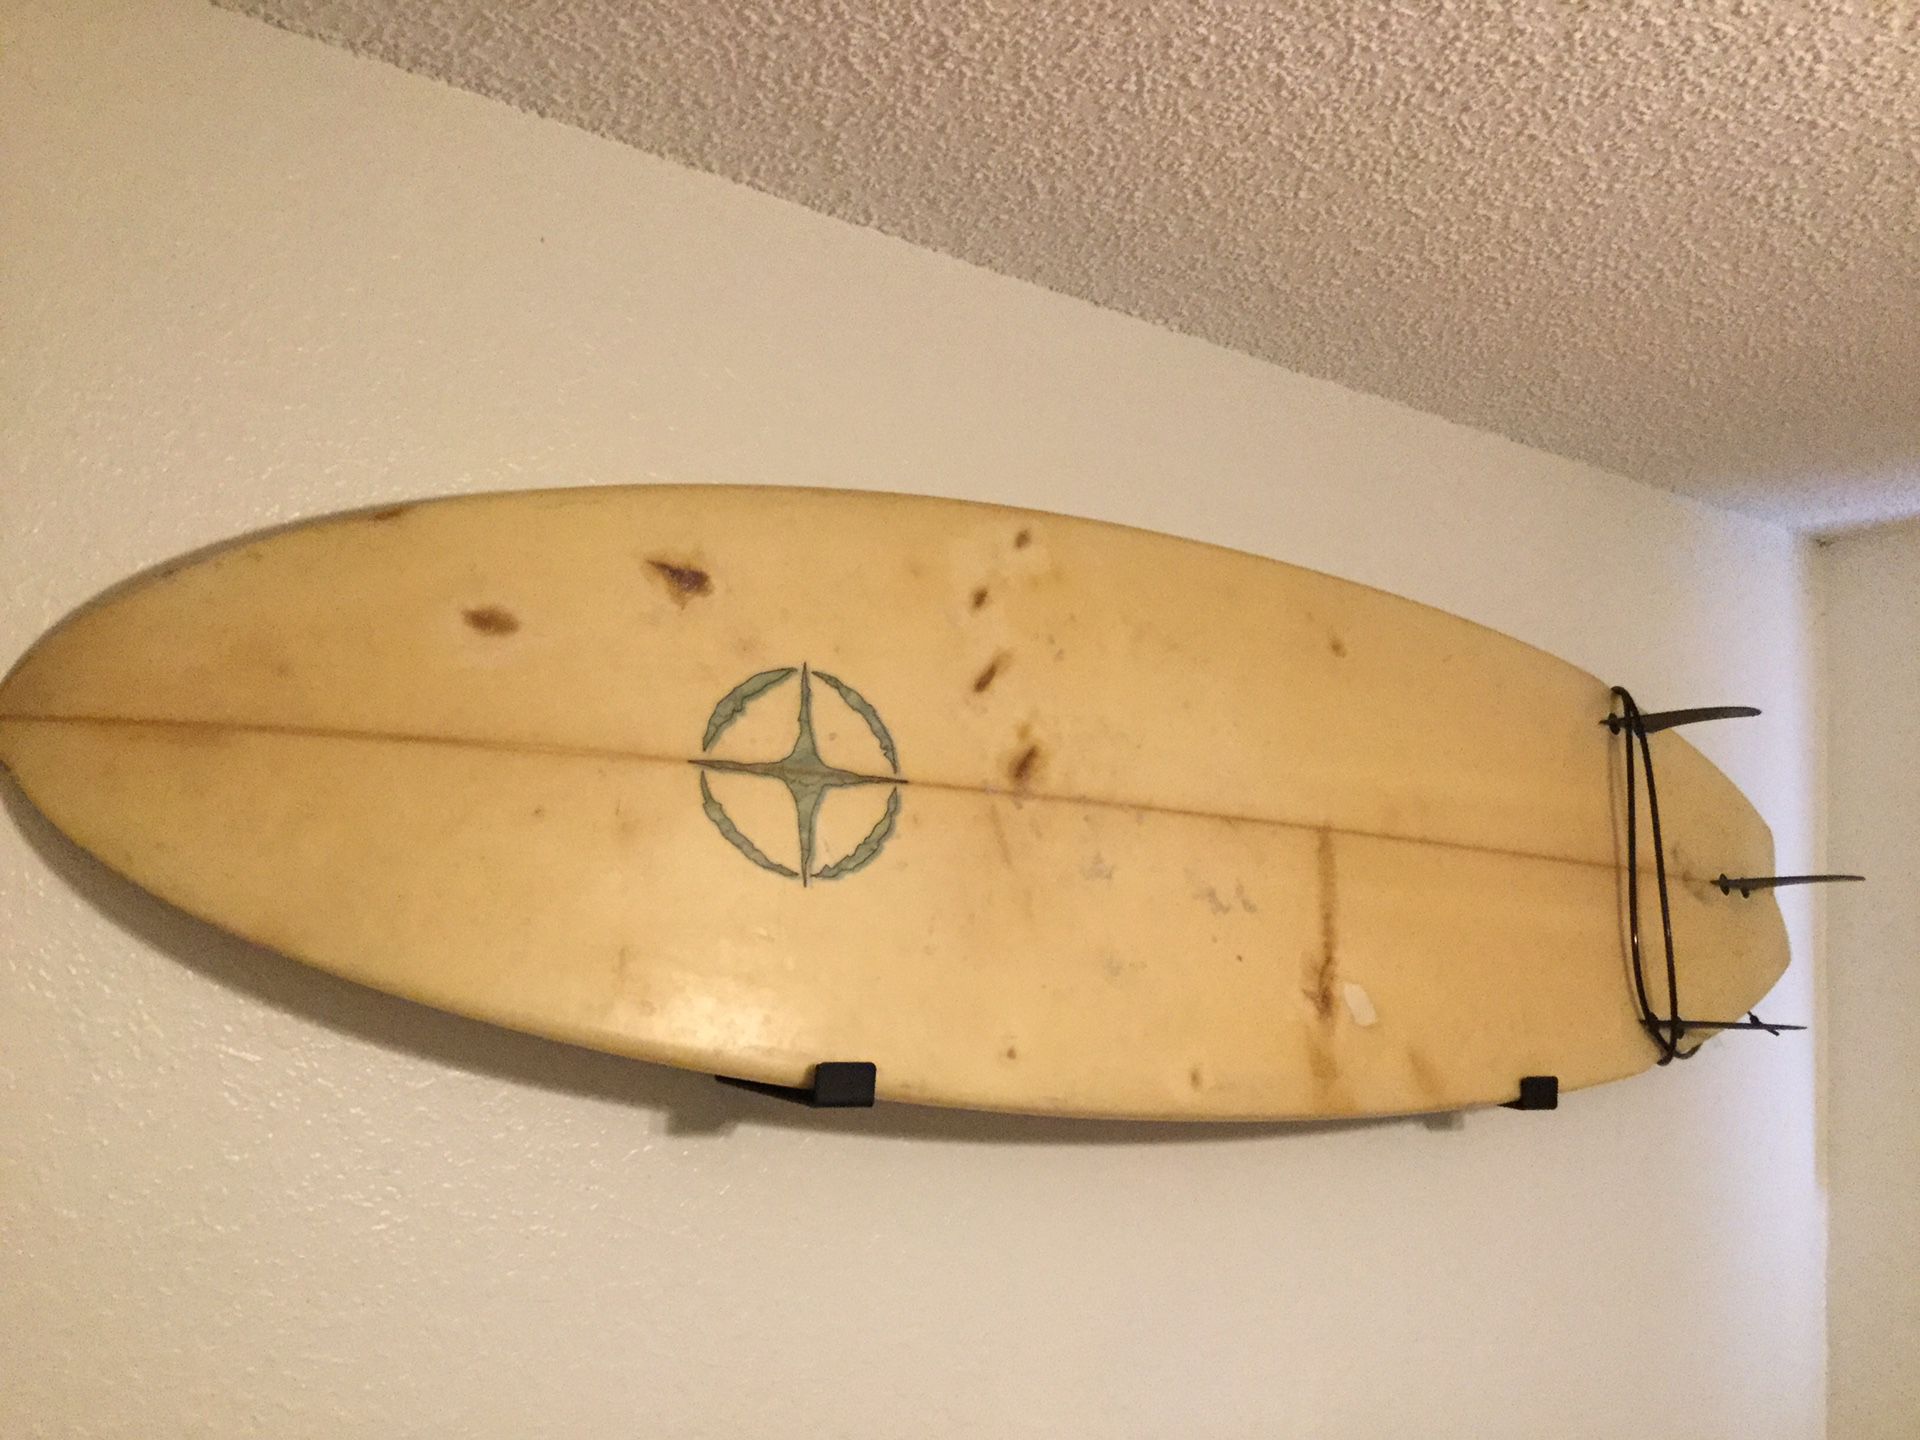 CODA 6 foot Surfboard and Wall Rack